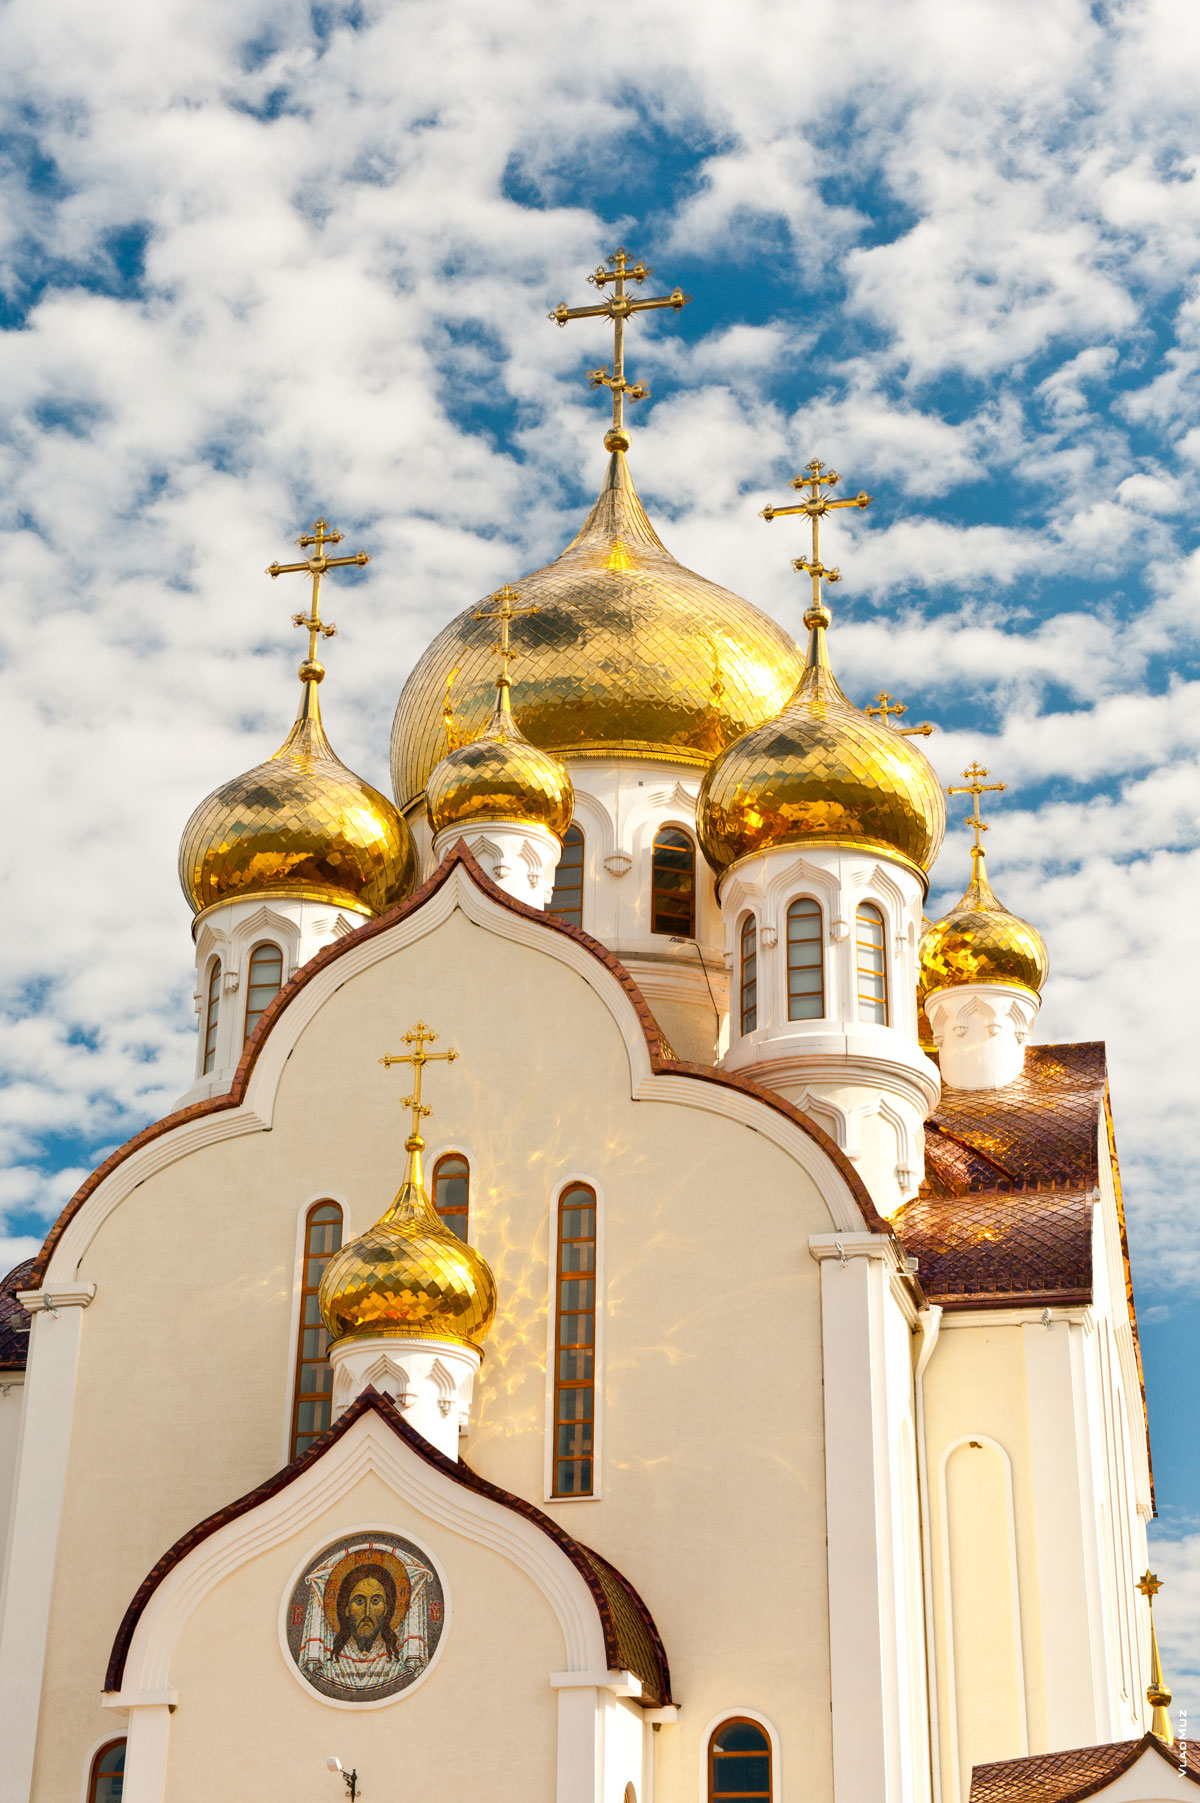 Фото золотых куполов храма Рождества Христова в Волгодонске на фоне синего неба и облаков